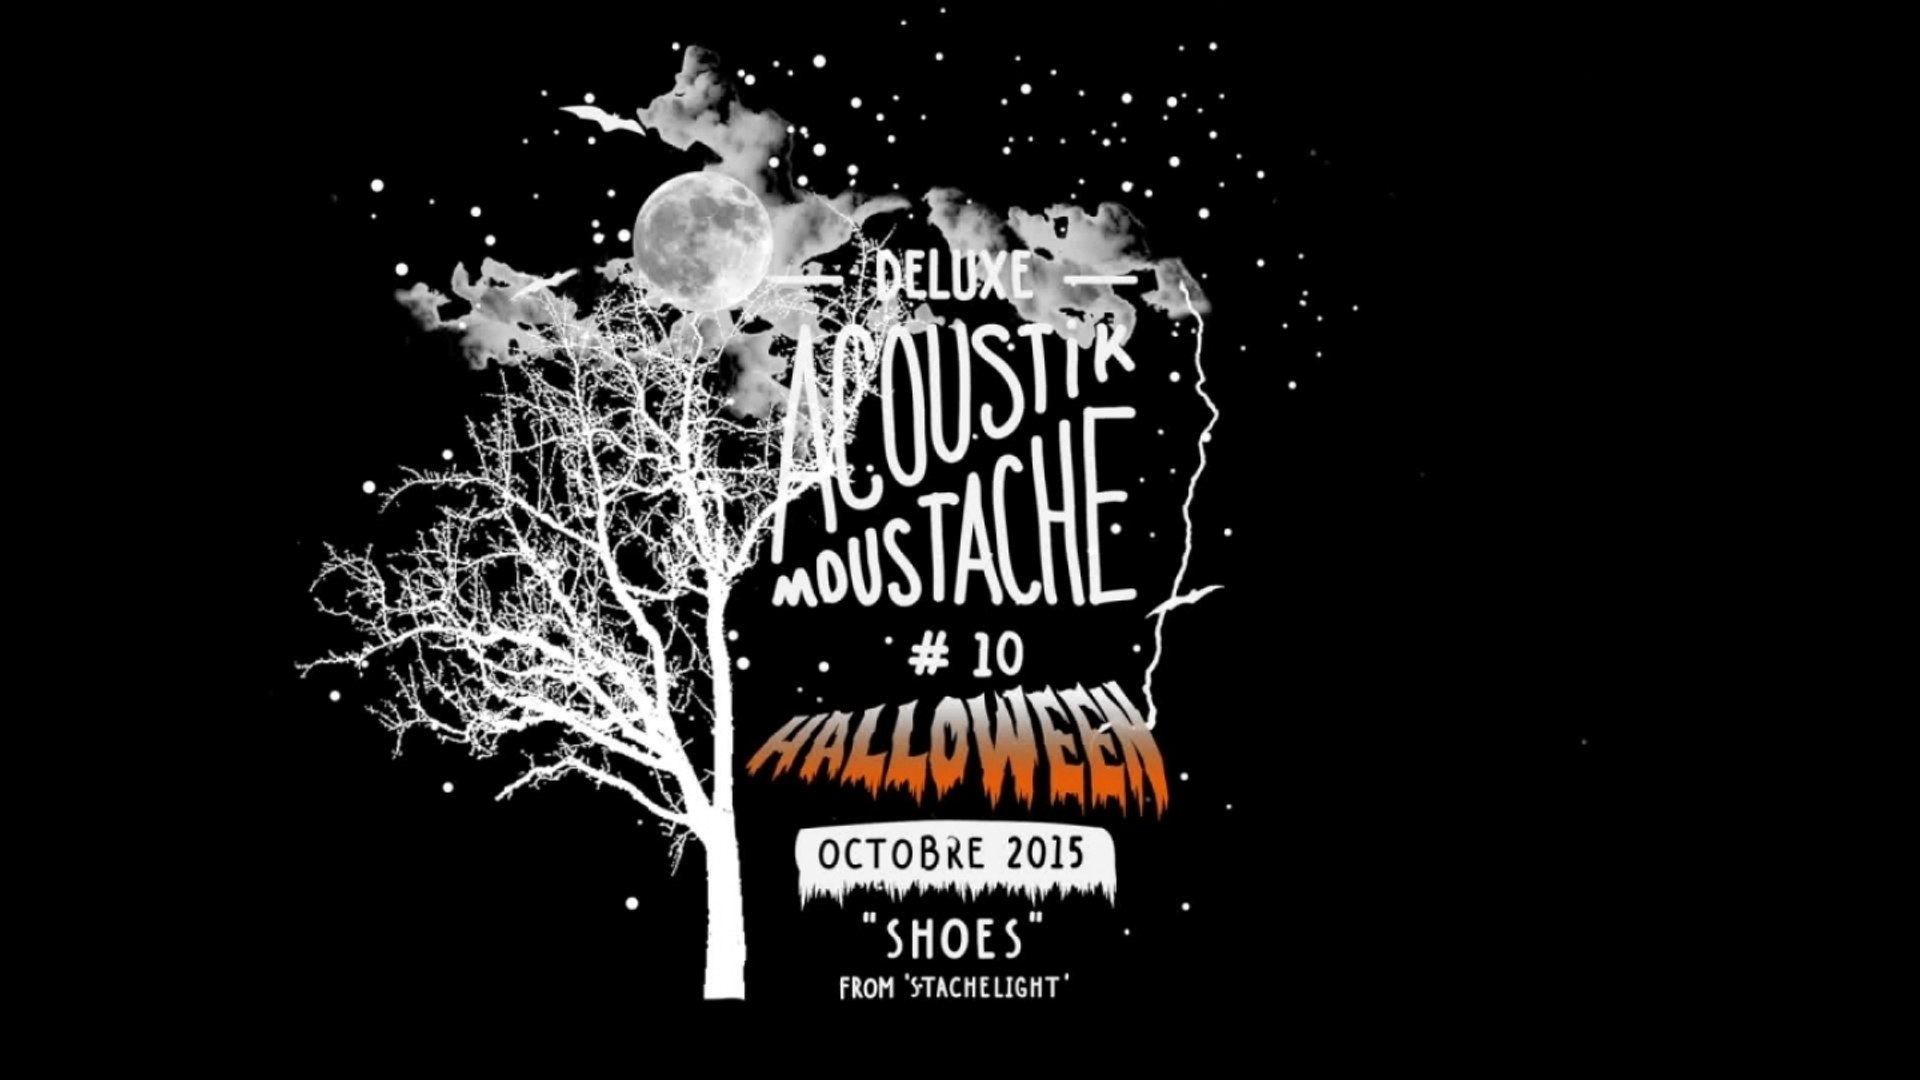 Deluxe - Acoustik Moustache #10 Halloween - Vidéo Dailymotion